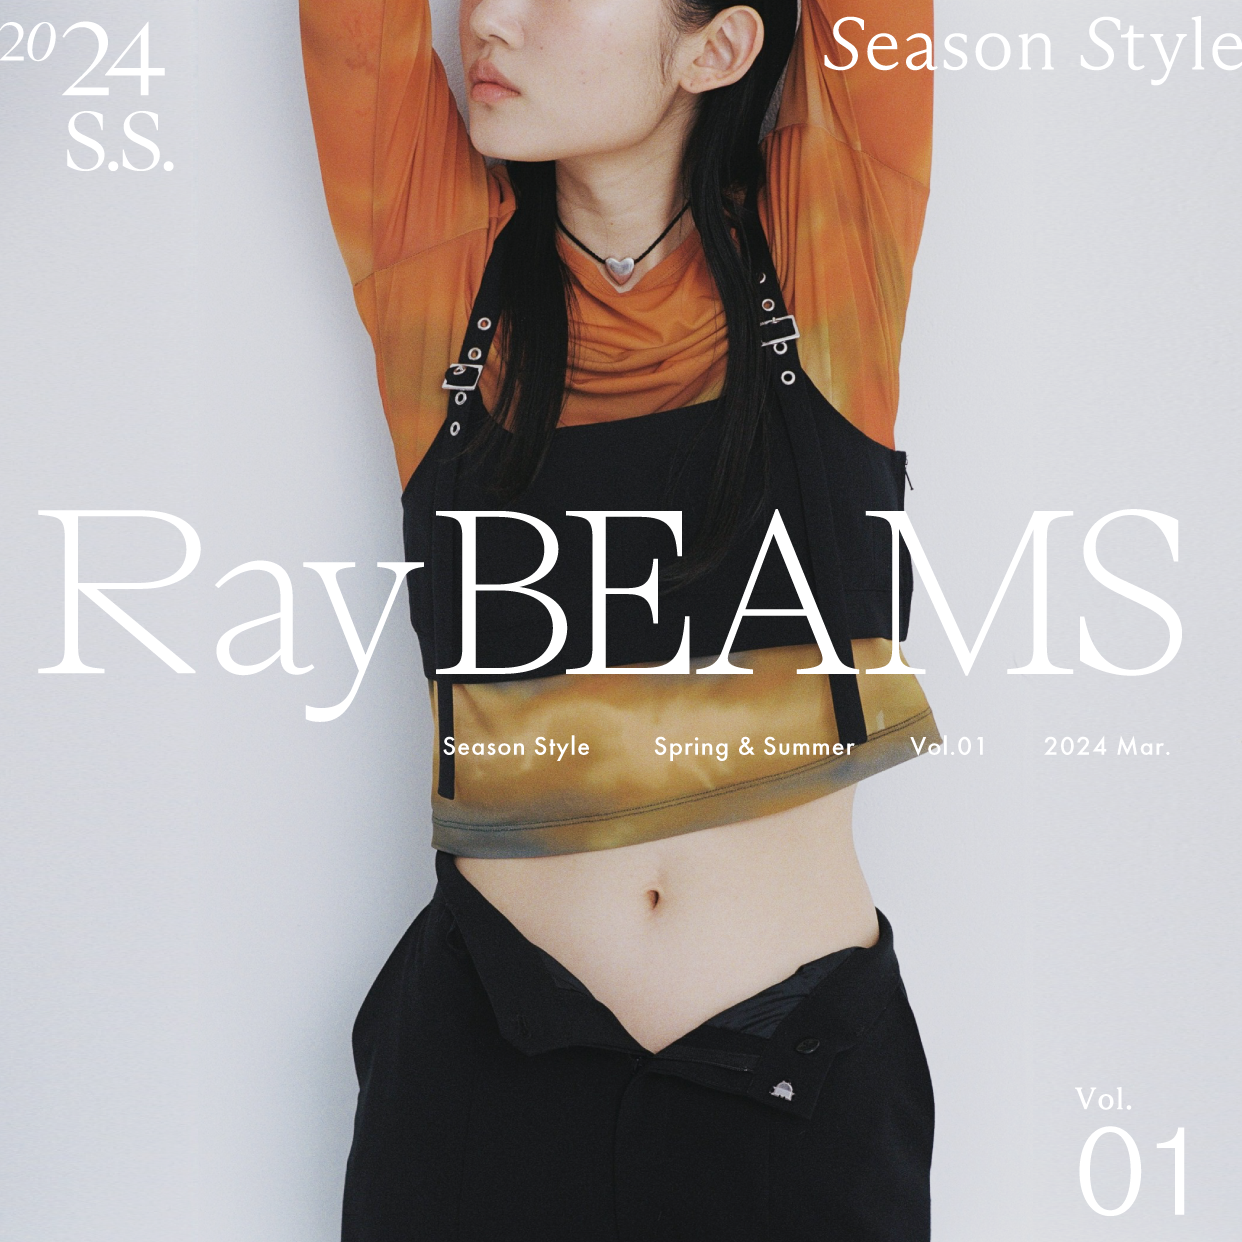 既時尚又運動、全新季節即將到來｜Ray BEAMS 2024 Spring & Summer Season Style vol.1